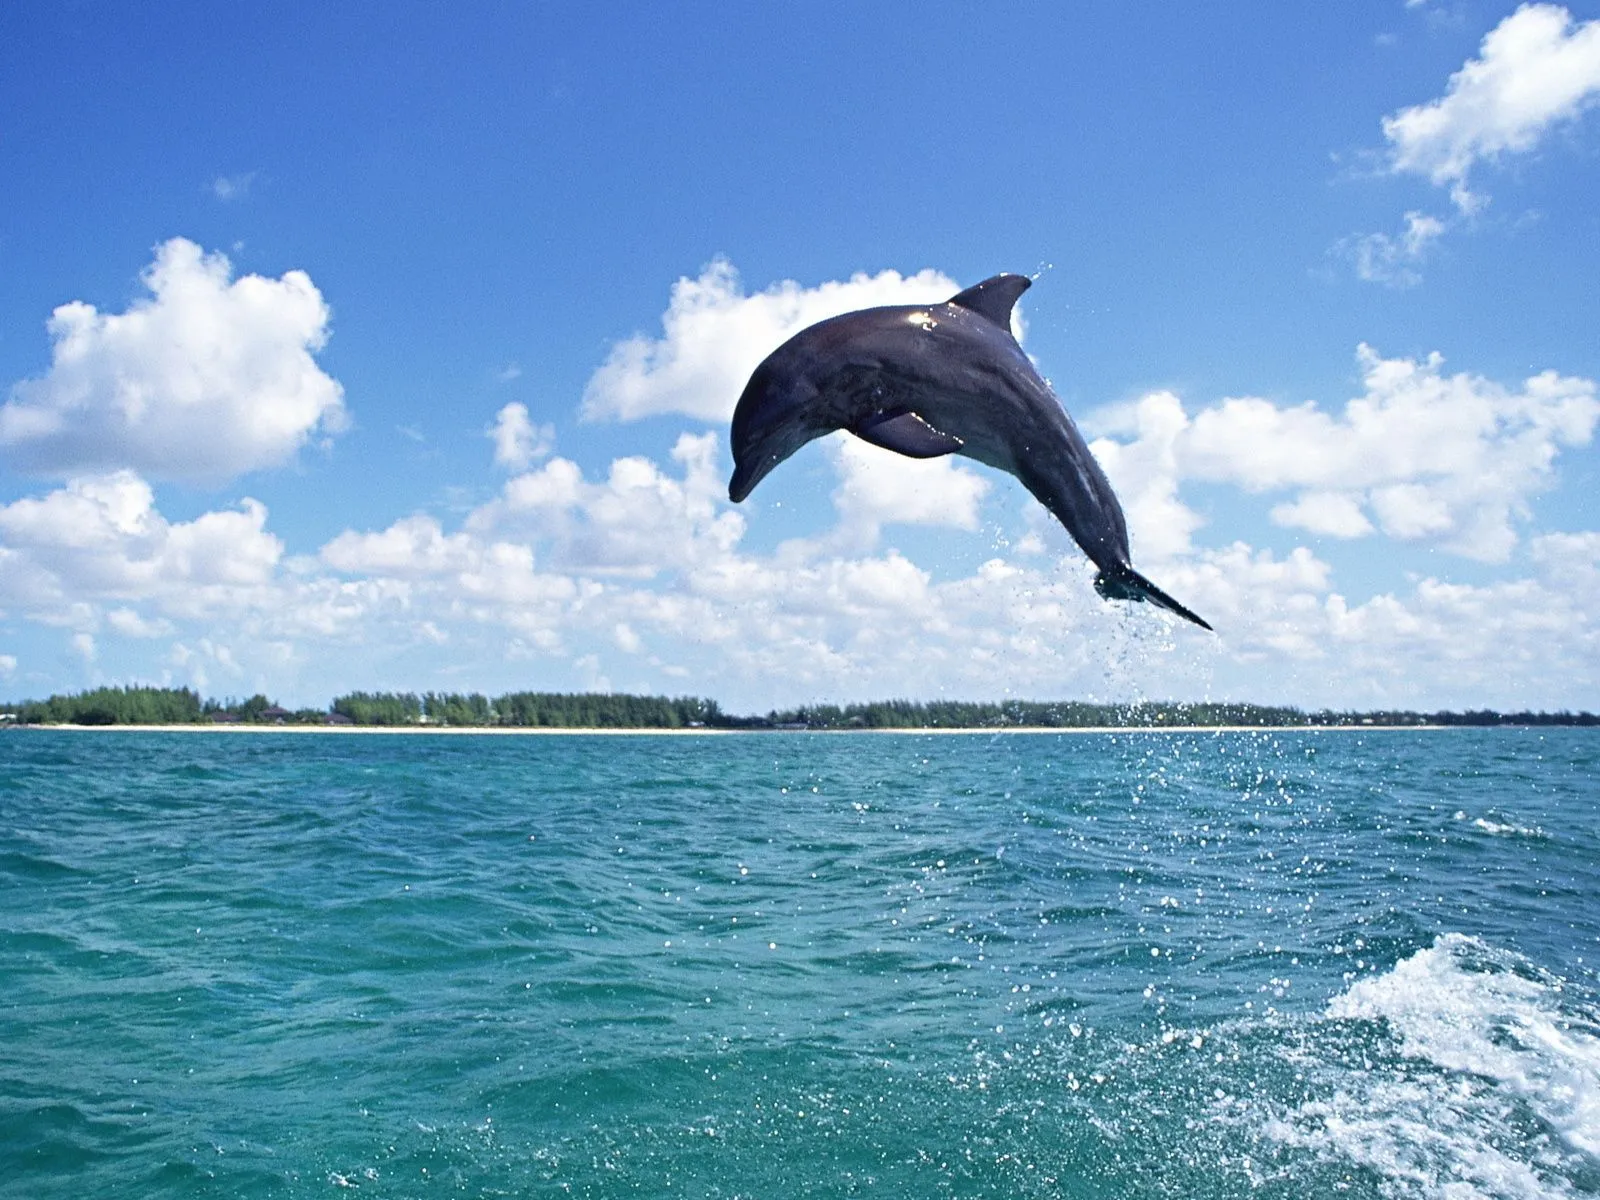 Fotos de delfin en el mar para facebook Mejores fotos del mundo ...